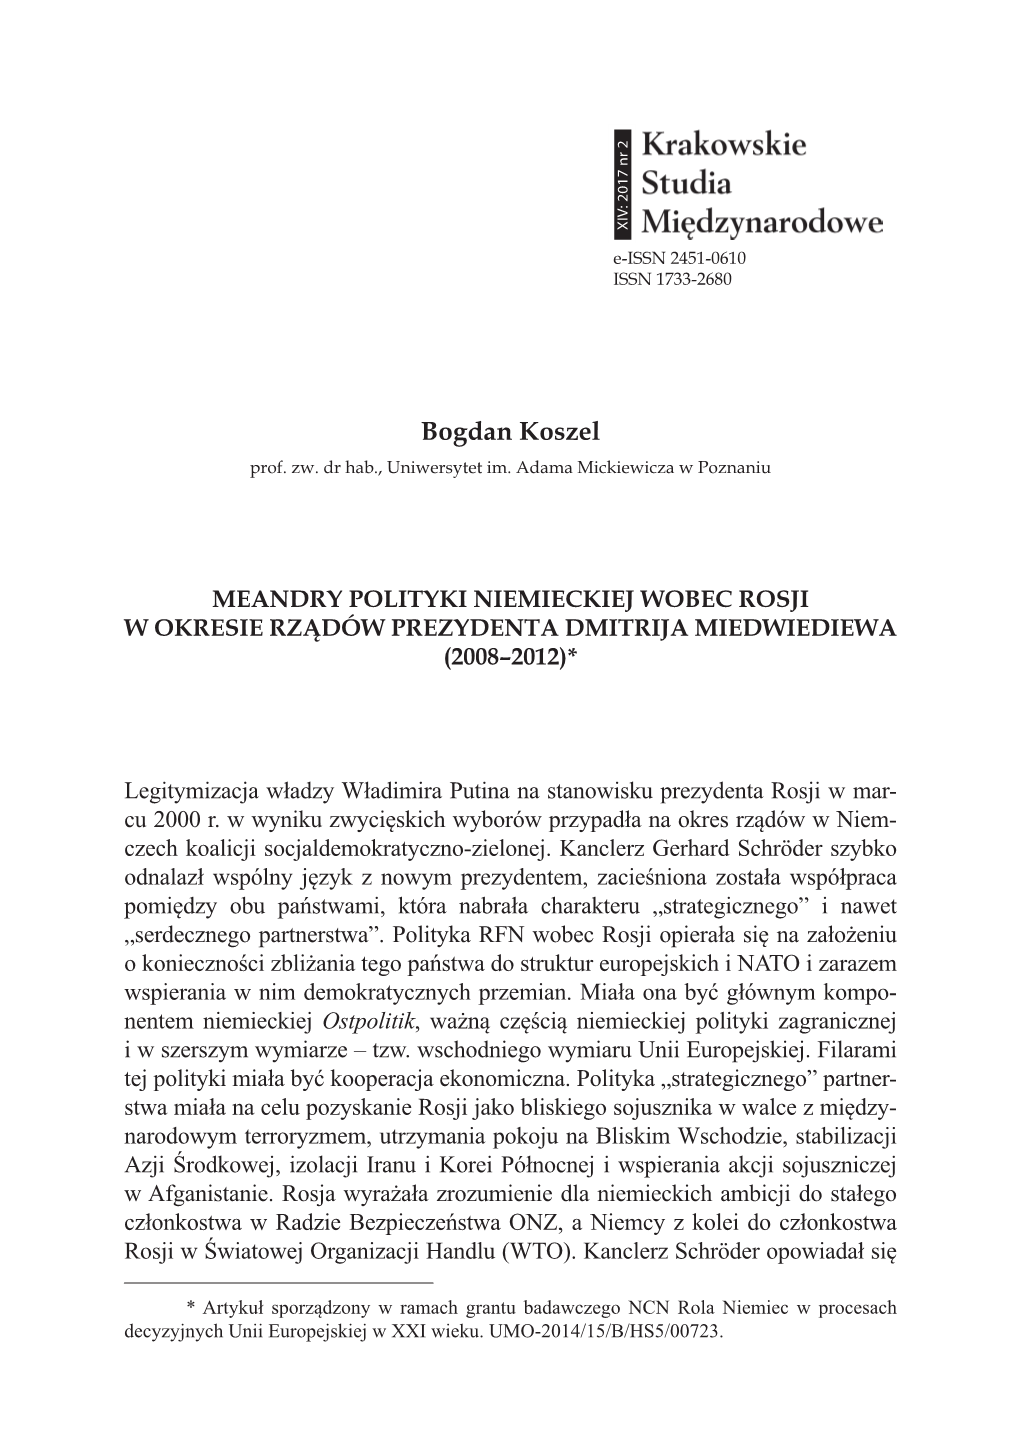 Meandry Polityki Niemieckiej Wobec Rosji W Okresie Rządów Dmitrija Miedwiediewa